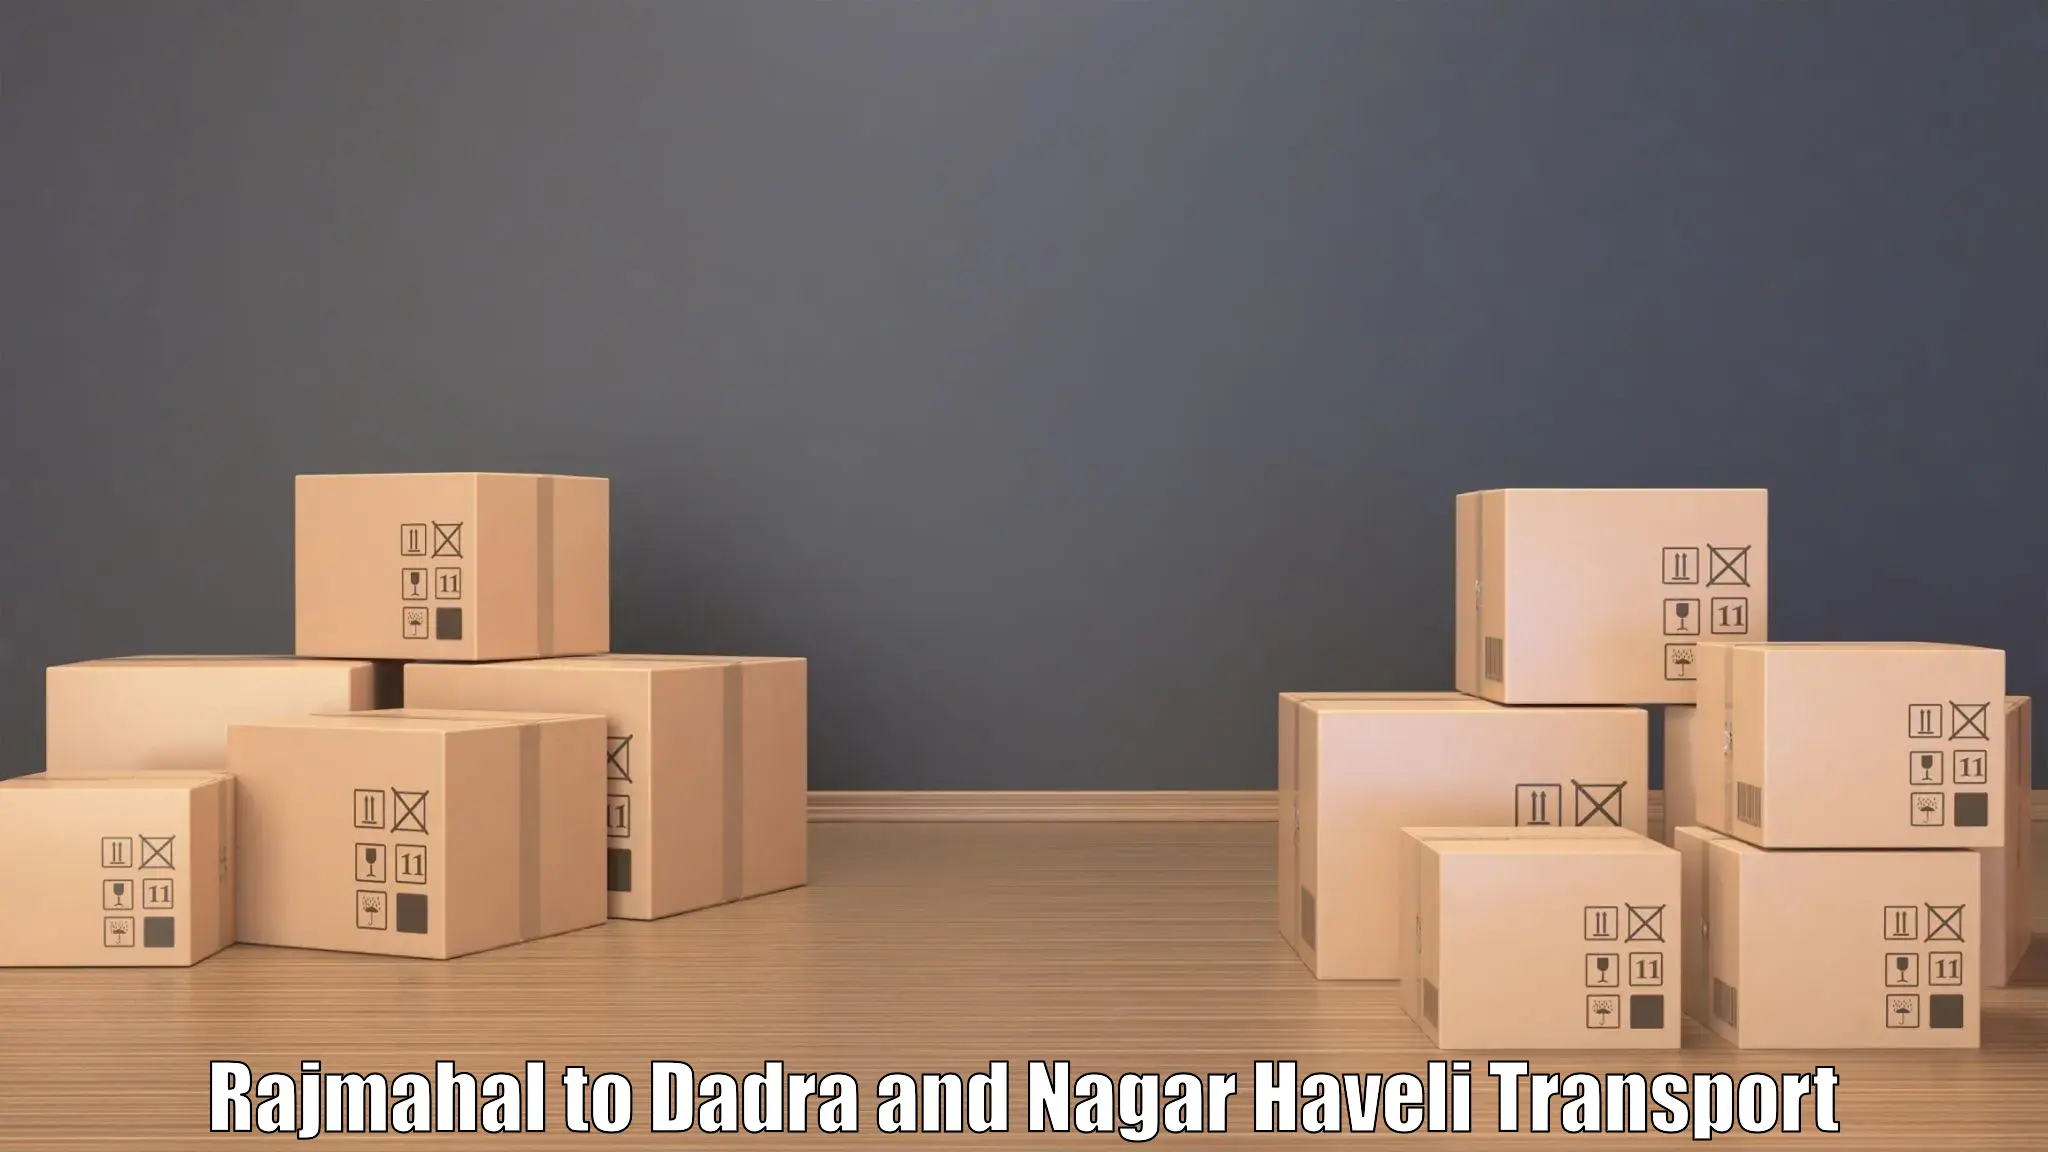 Pick up transport service Rajmahal to Dadra and Nagar Haveli